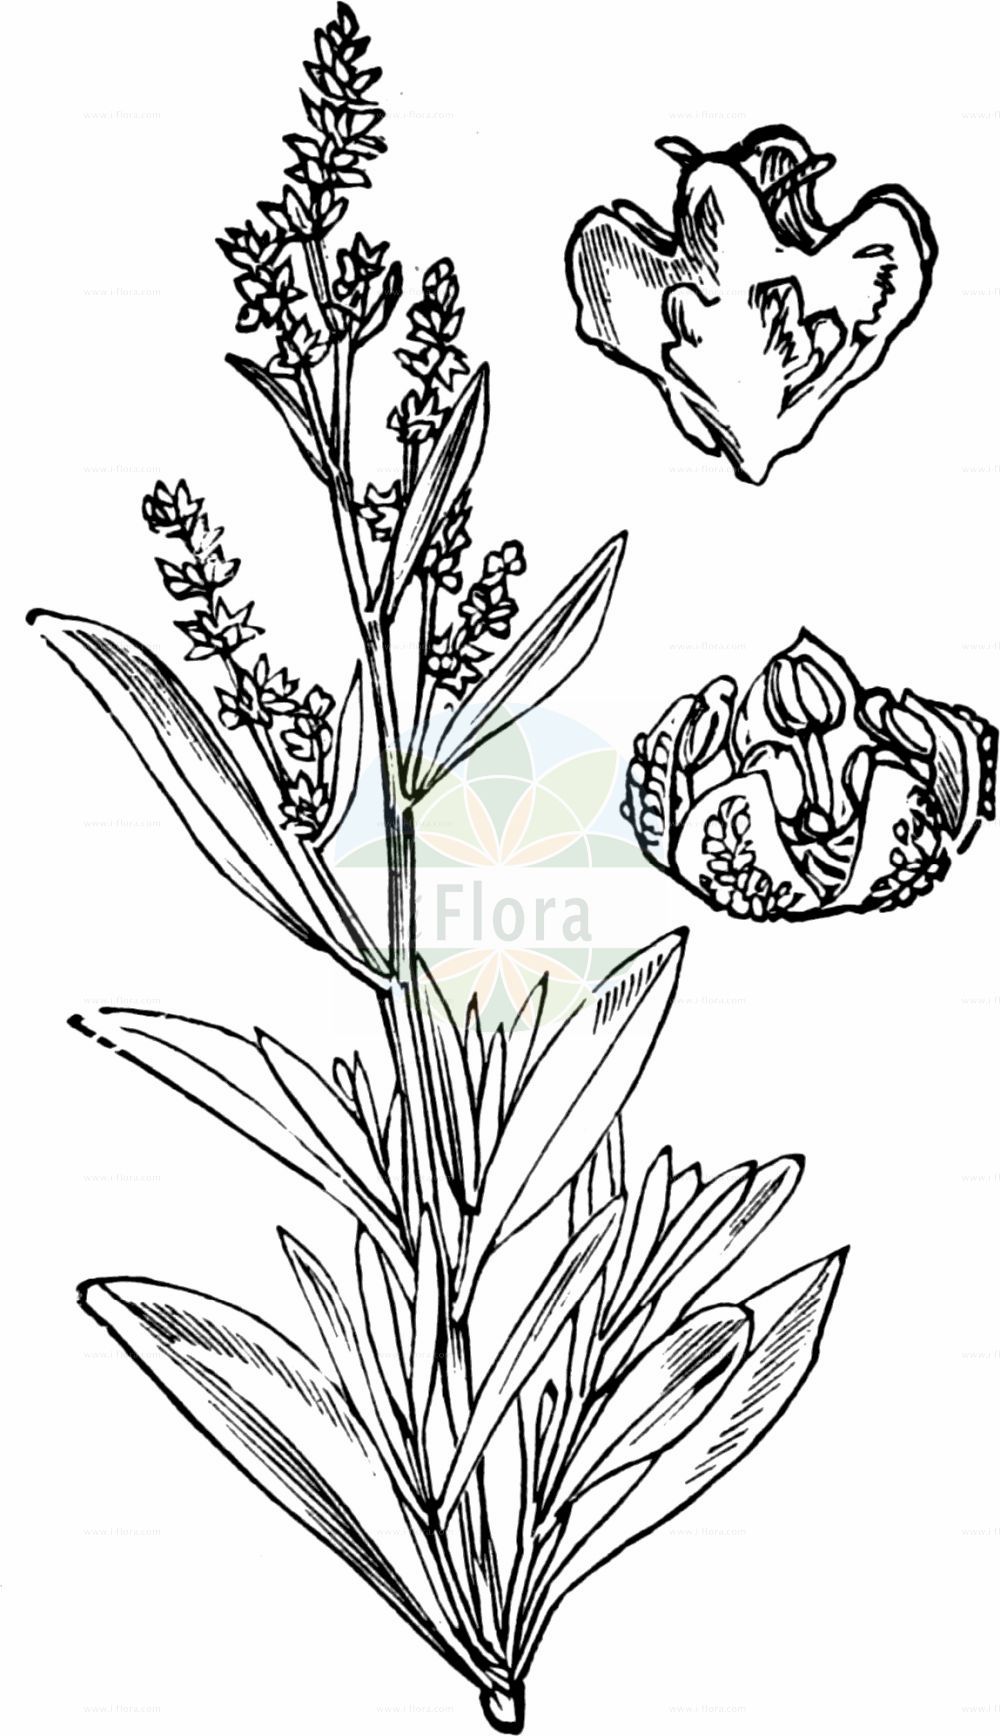 Historische Abbildung von Halimione portulacoides (Portulak-Keilmelde - Sea-purslane). Das Bild zeigt Blatt, Bluete, Frucht und Same. ---- Historical Drawing of Halimione portulacoides (Portulak-Keilmelde - Sea-purslane). The image is showing leaf, flower, fruit and seed.(Halimione portulacoides,Portulak-Keilmelde,Sea-purslane,Atriplex portulacoides,Halimione portulacoides,Obione portulacoides,Portulak-Keilmelde,Sea-purslane,Halimione,Keilmelde,Amaranthaceae,Fuchsschwanzgewächse,Pigweed family,Blatt,Bluete,Frucht,Same,leaf,flower,fruit,seed,Fitch et al. (1880))